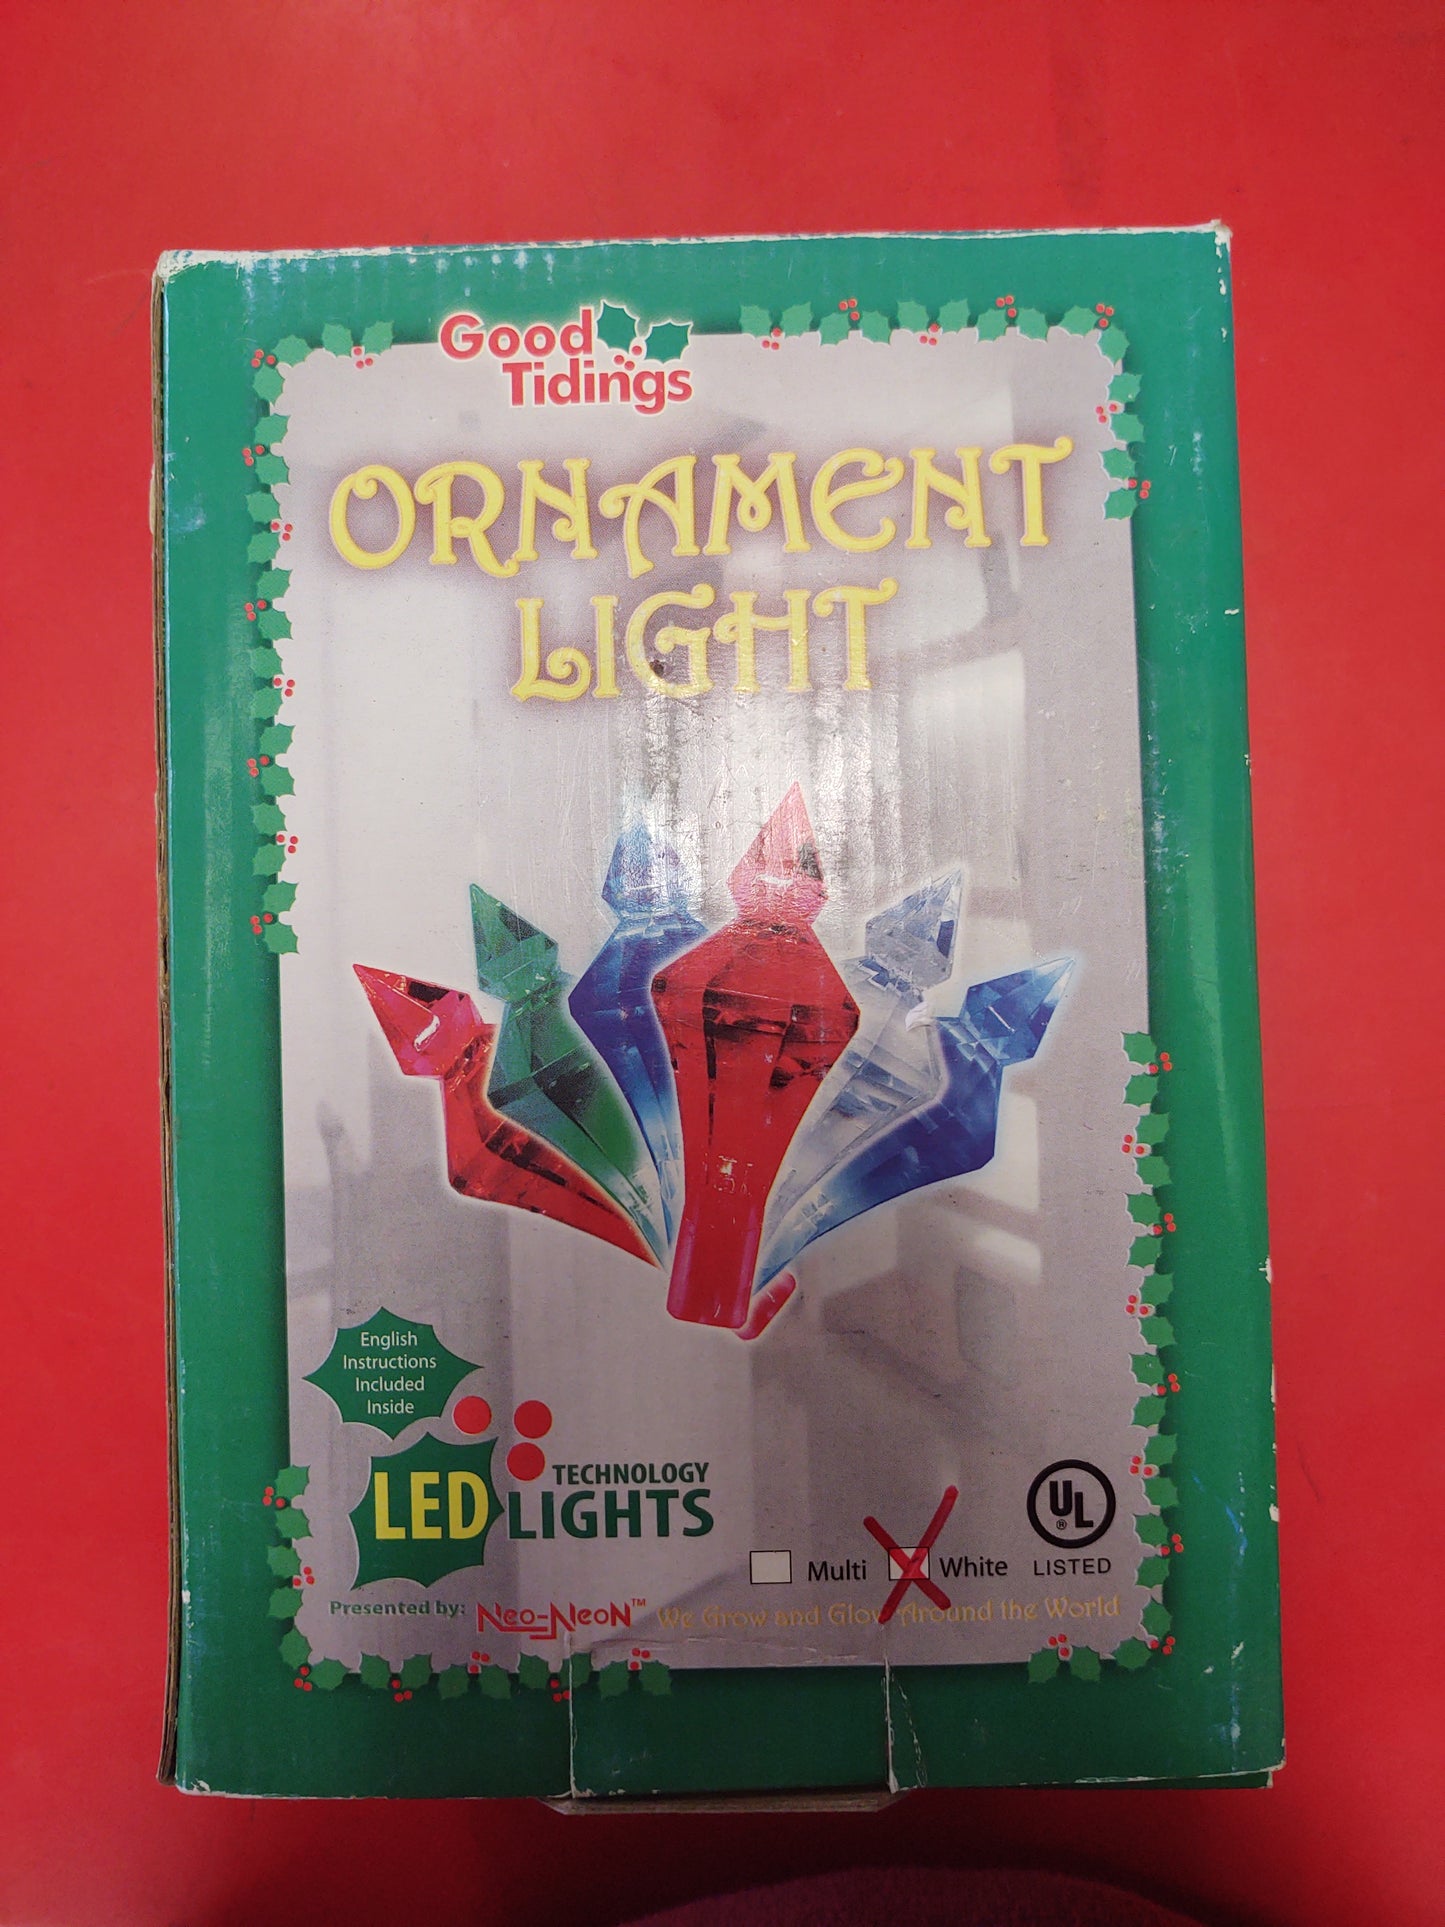 LED ornament Light set